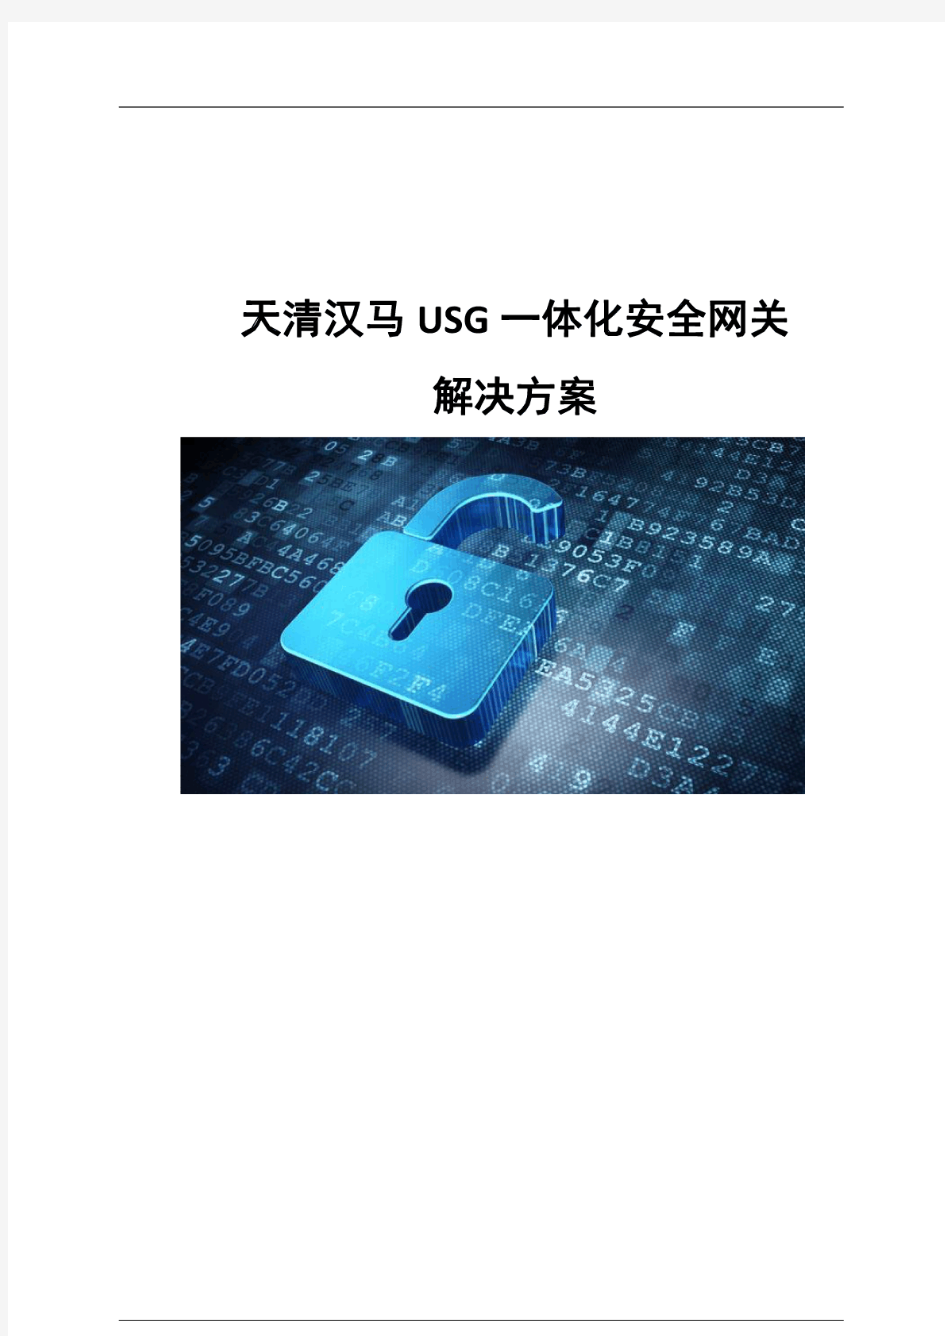 USG一体化安全网关解决方案